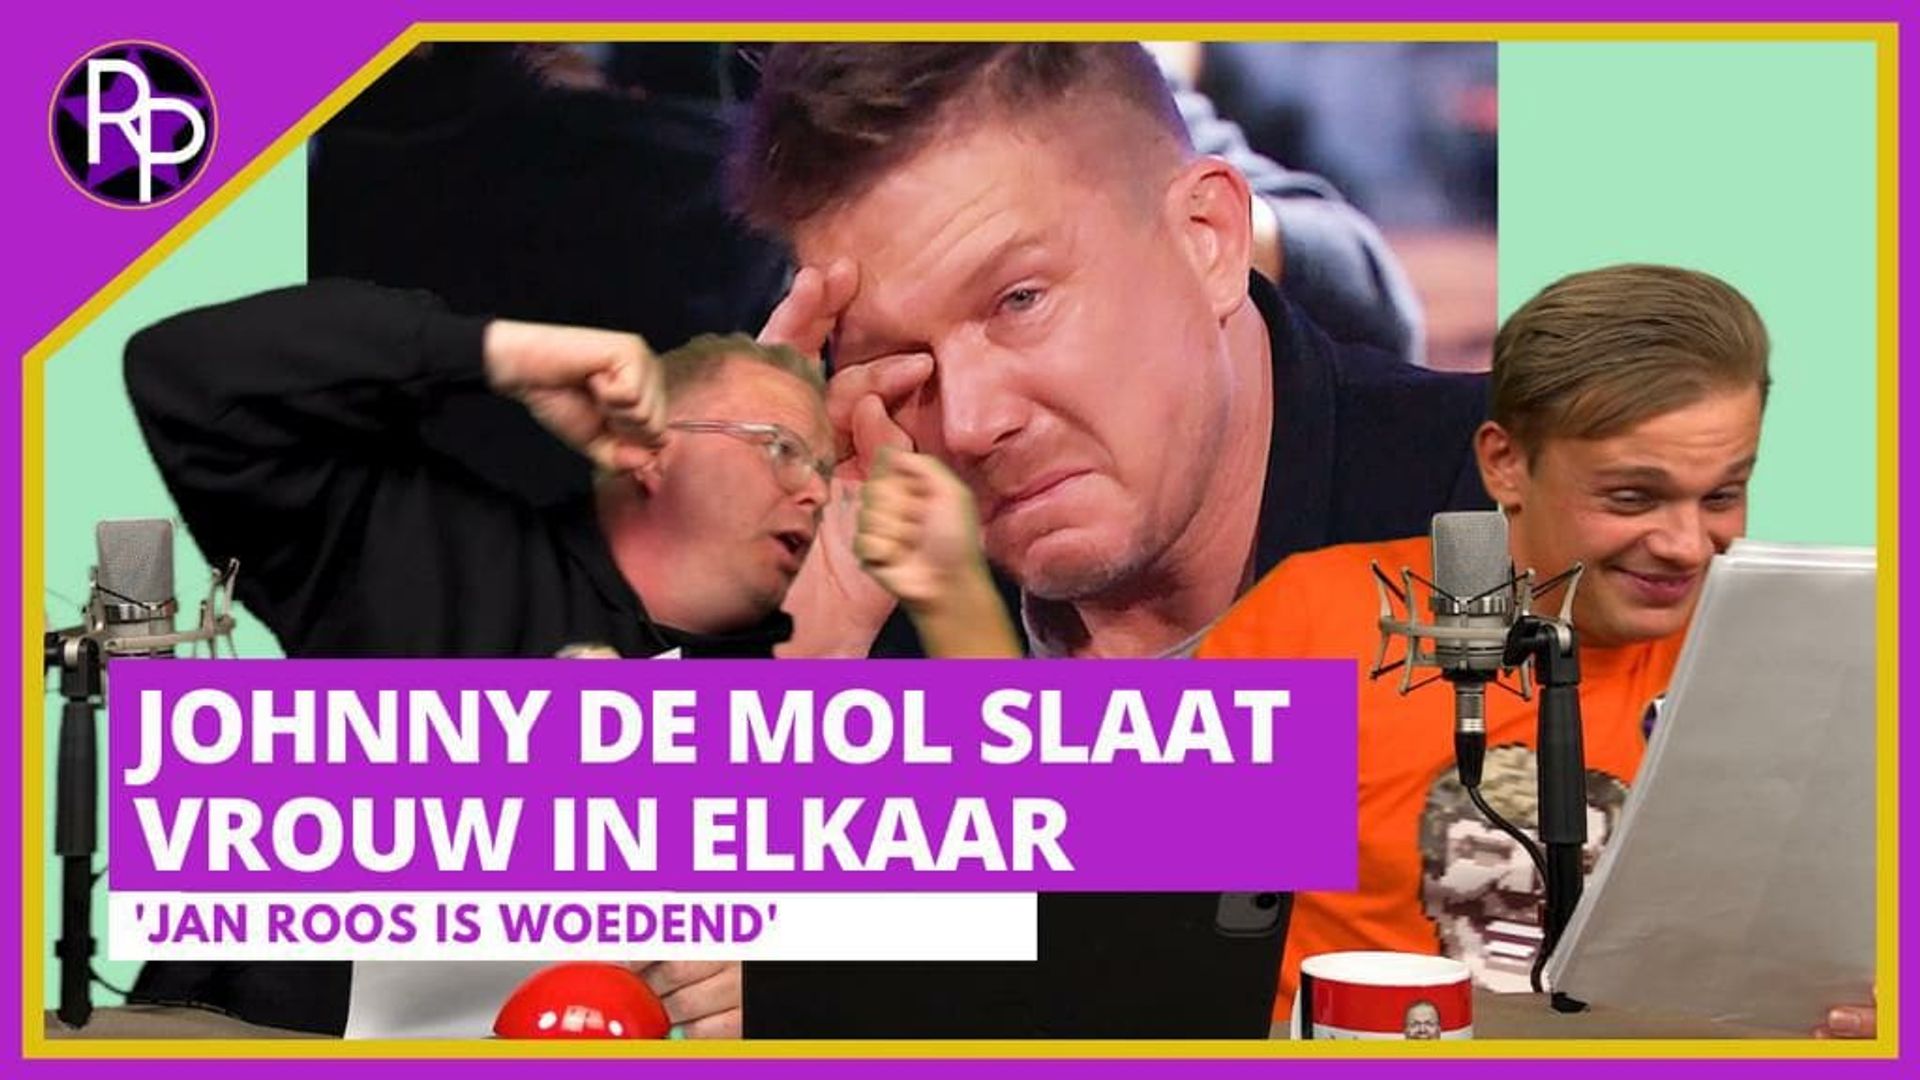 Johnny de Mol slaat vrouw in elkaar & Ali B komt terug naar NL